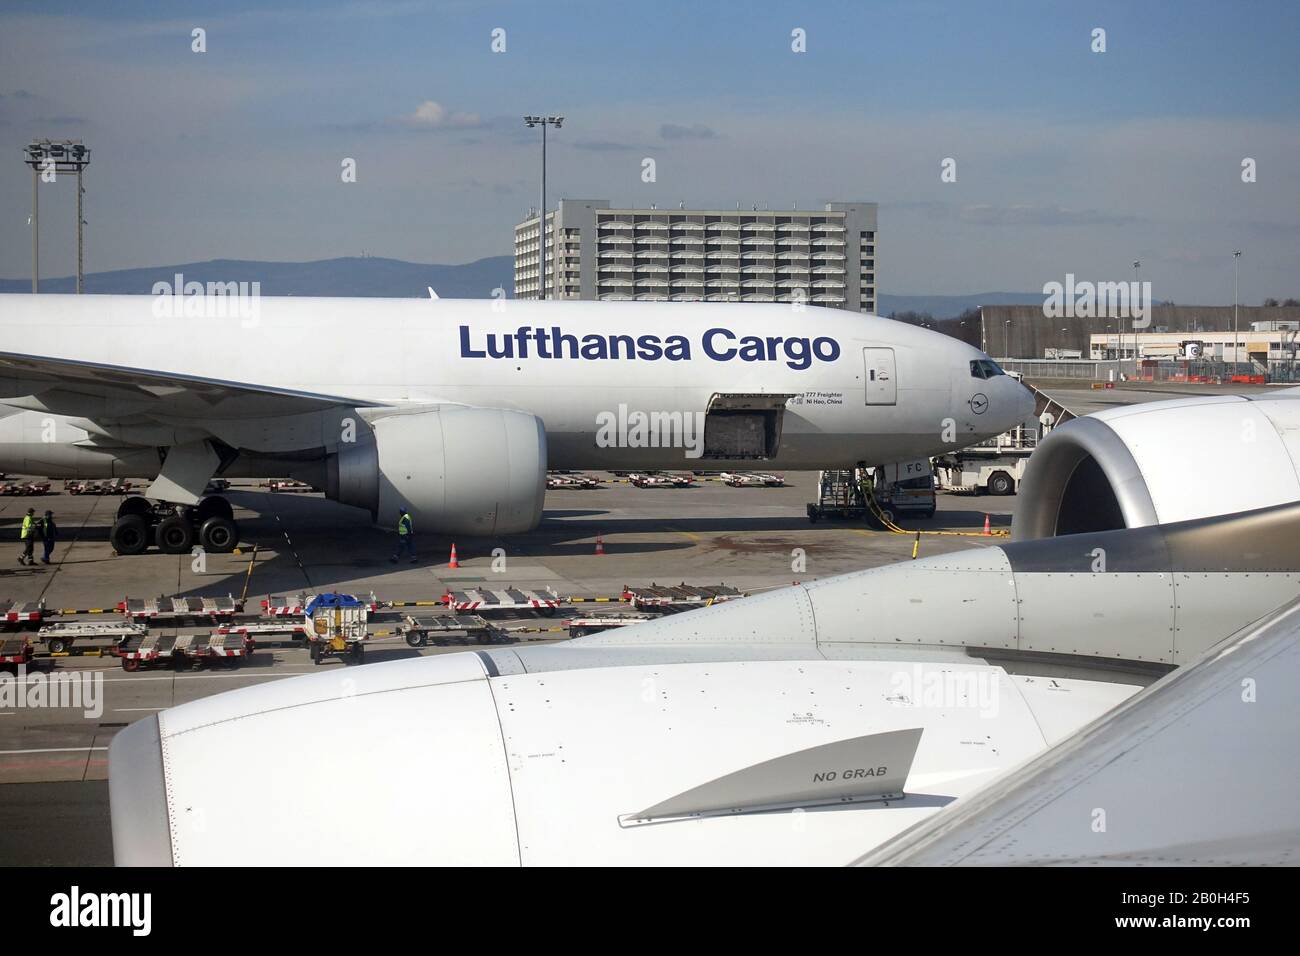 20.03.2019, Frankfurt am Main, Hessen, Germania - McDonnell Douglas MD-11 di Lufthansa Cargo all'aeroporto di Francoforte. 00S190320D023CAROEX.JPG [MODELLO RELEA Foto Stock